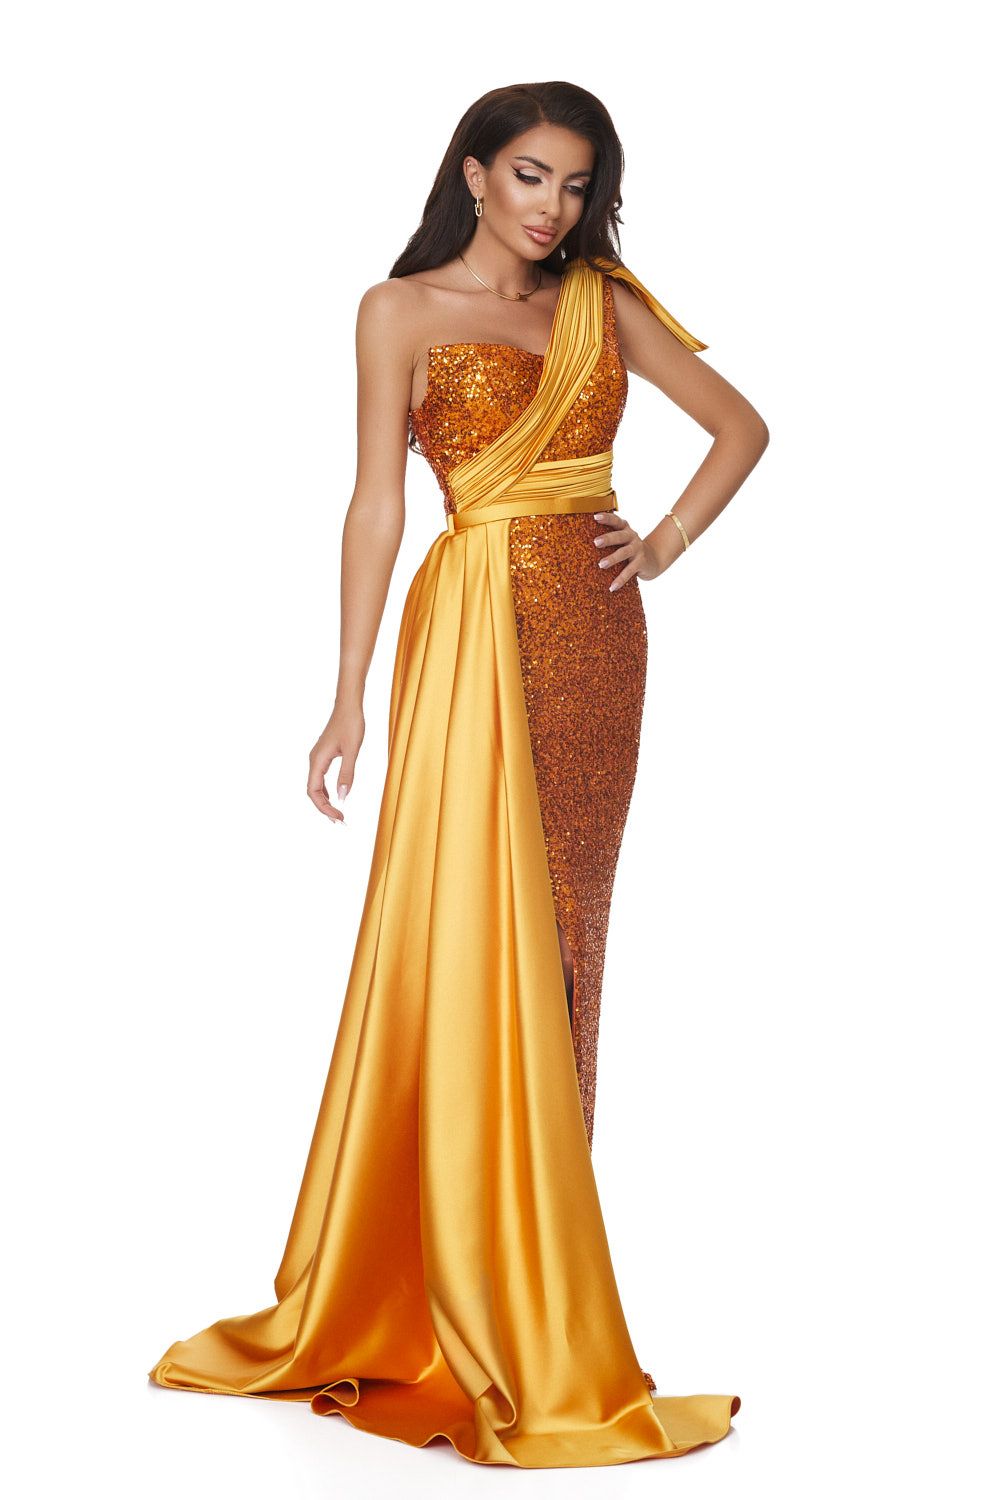 Adrianne Bogas hosszú, arany színű női ruha